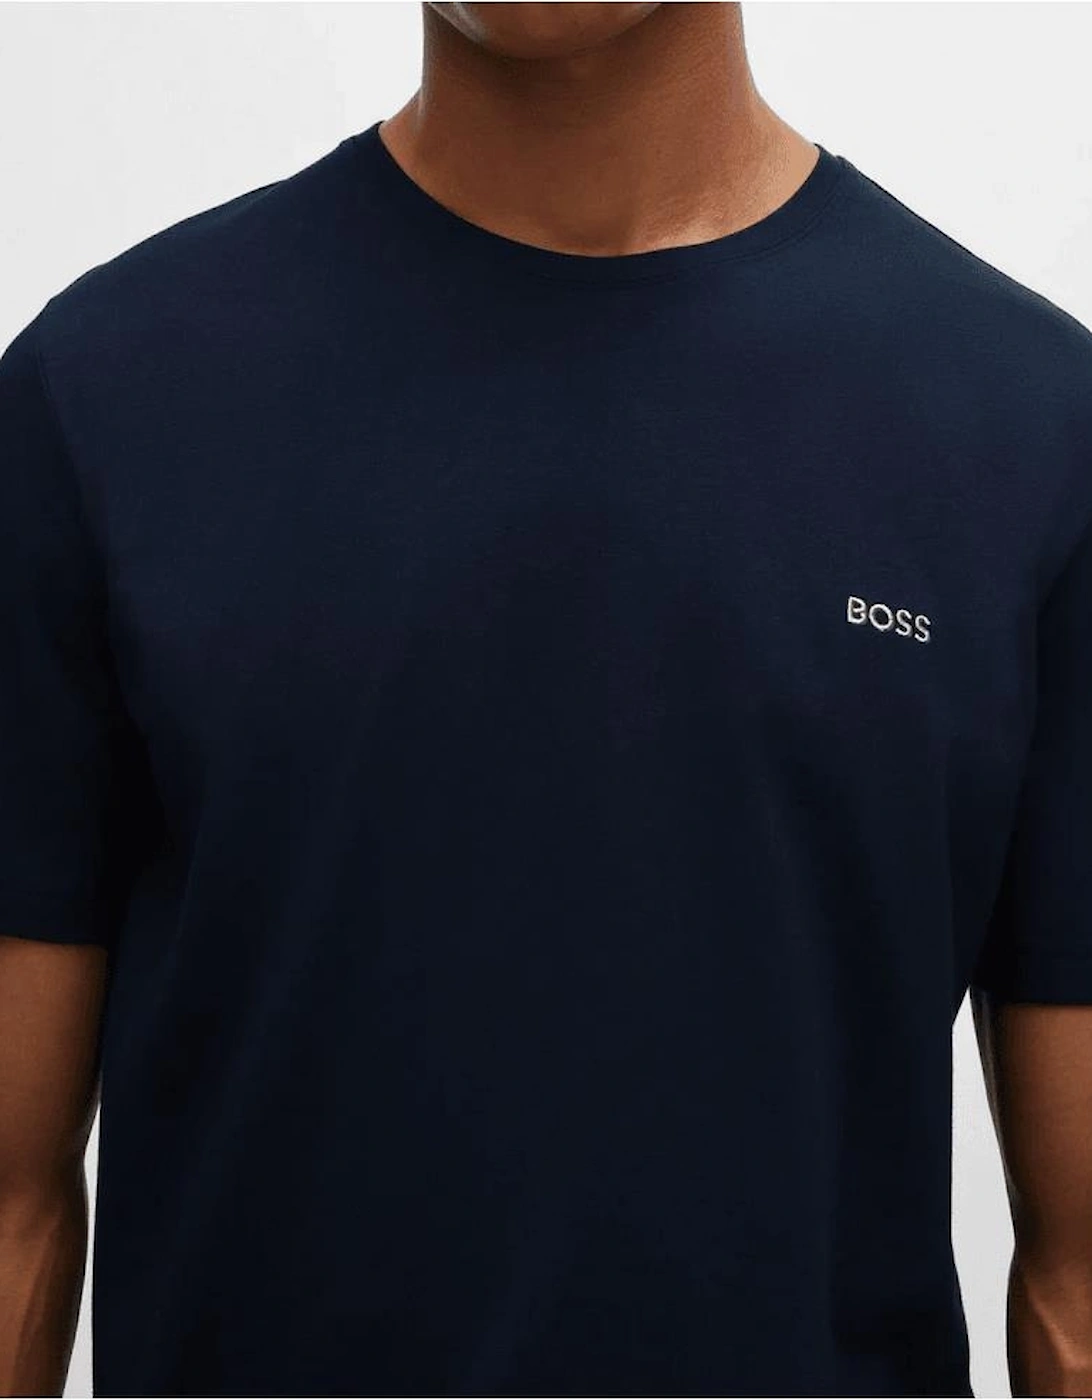 Cotton Embroidered Logo Dark Blue T-Shirt